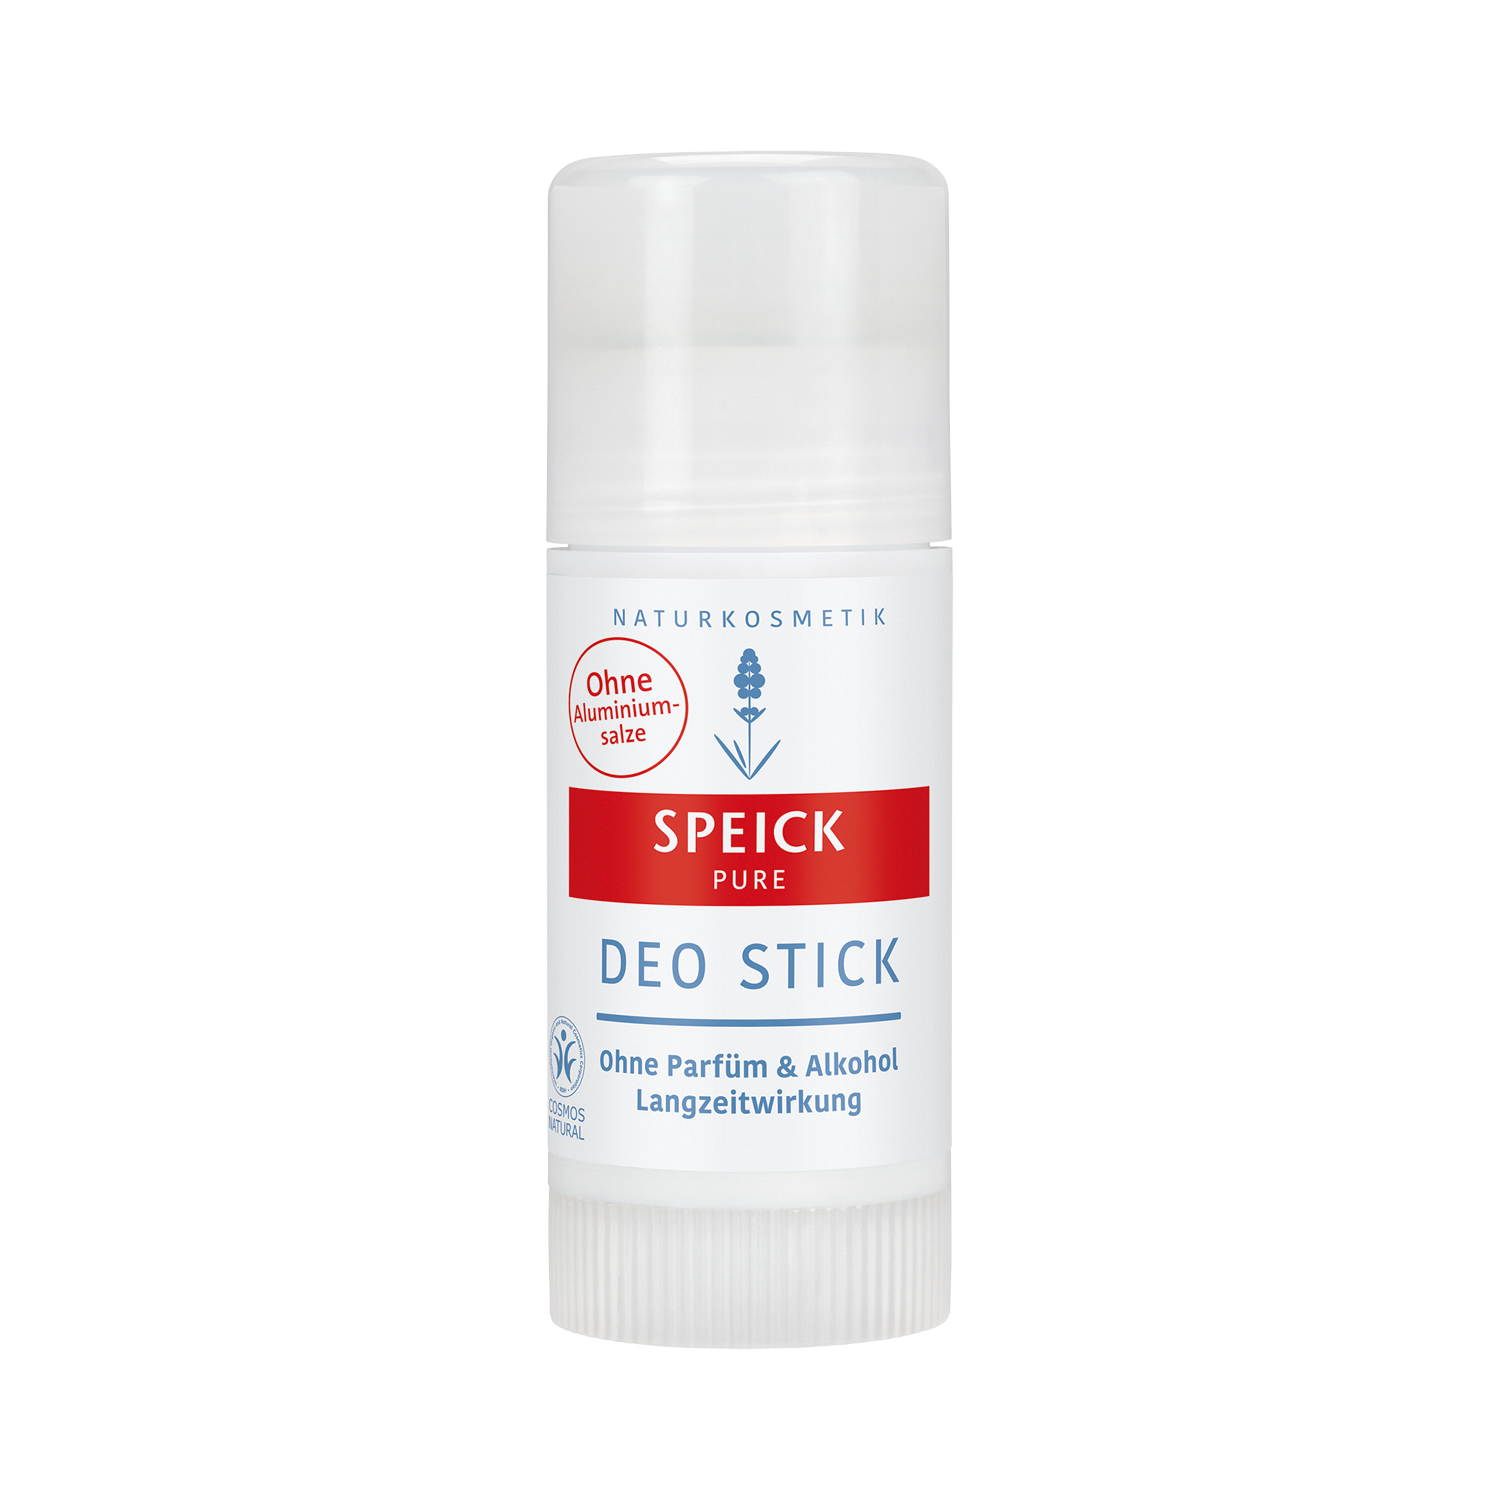 Speick Pure - Deo Stick - ohne Parfum und Alkohol